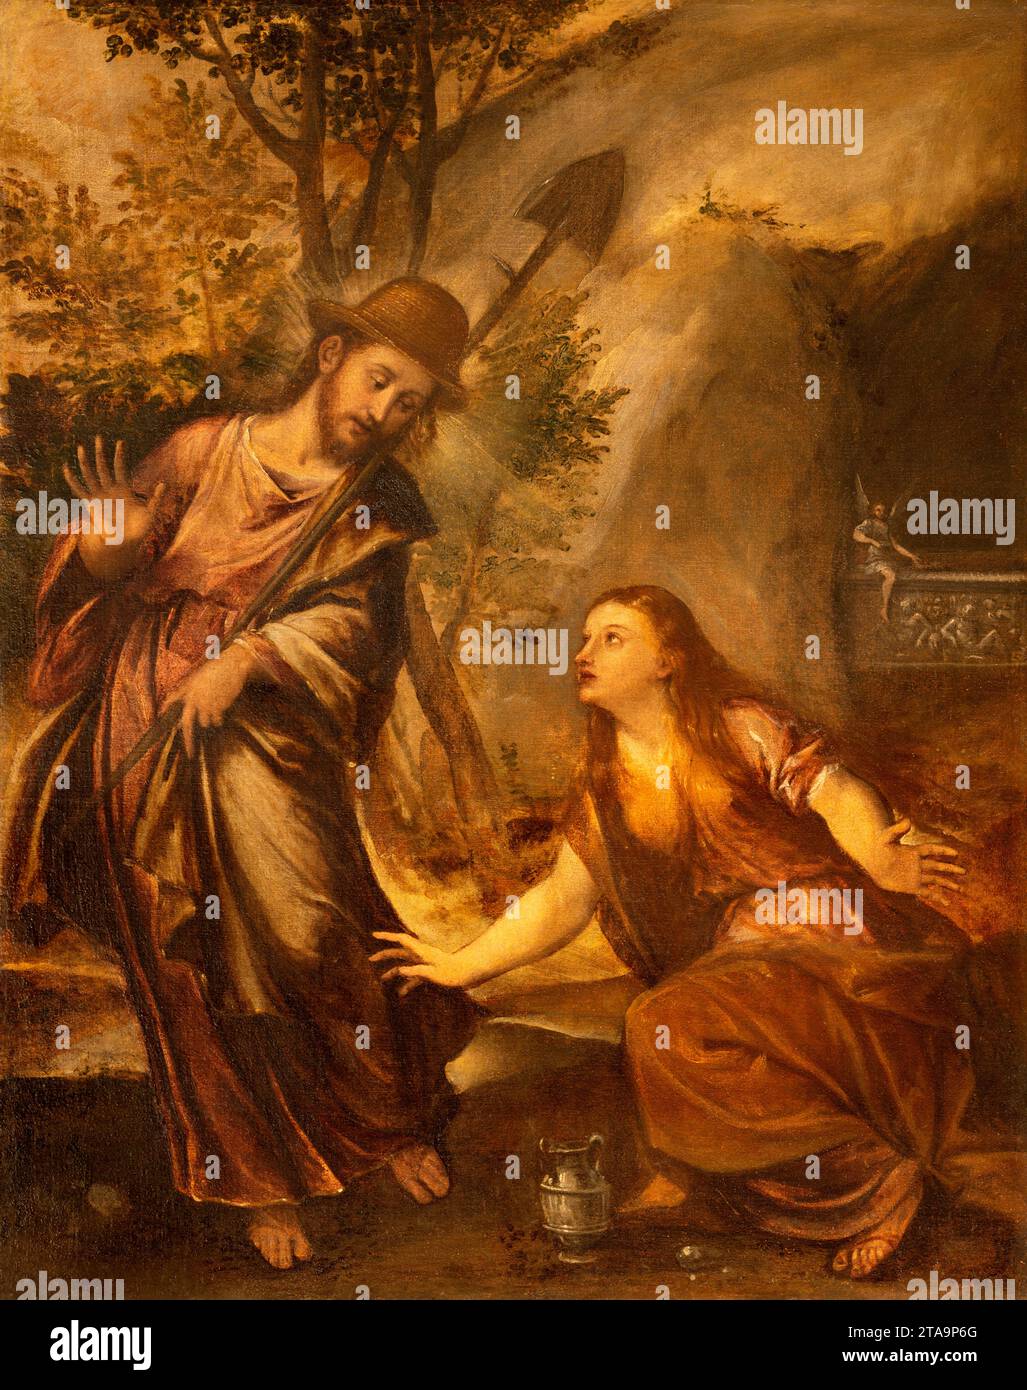 Vicenza - das Gemälde der Erscheinung Christi bei Maria Magdalena nach der Auferstehung 'Noli me tangere' Stockfoto